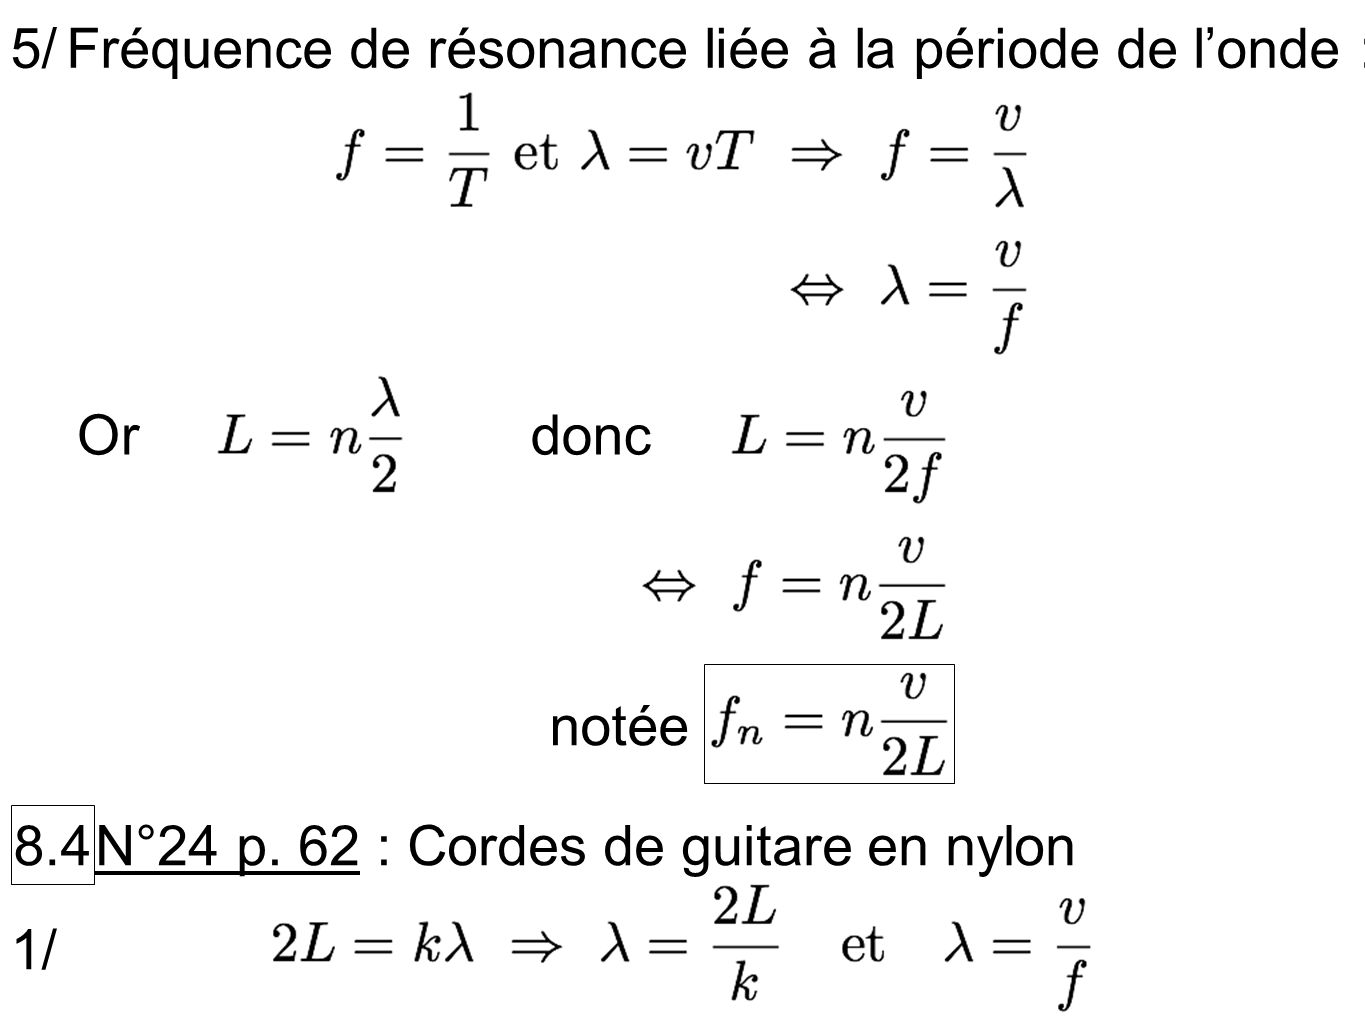 5/ Fréquence de résonance liée à la période de l’onde : Or. donc. notée N°24 p. 62 : Cordes de guitare en nylon.